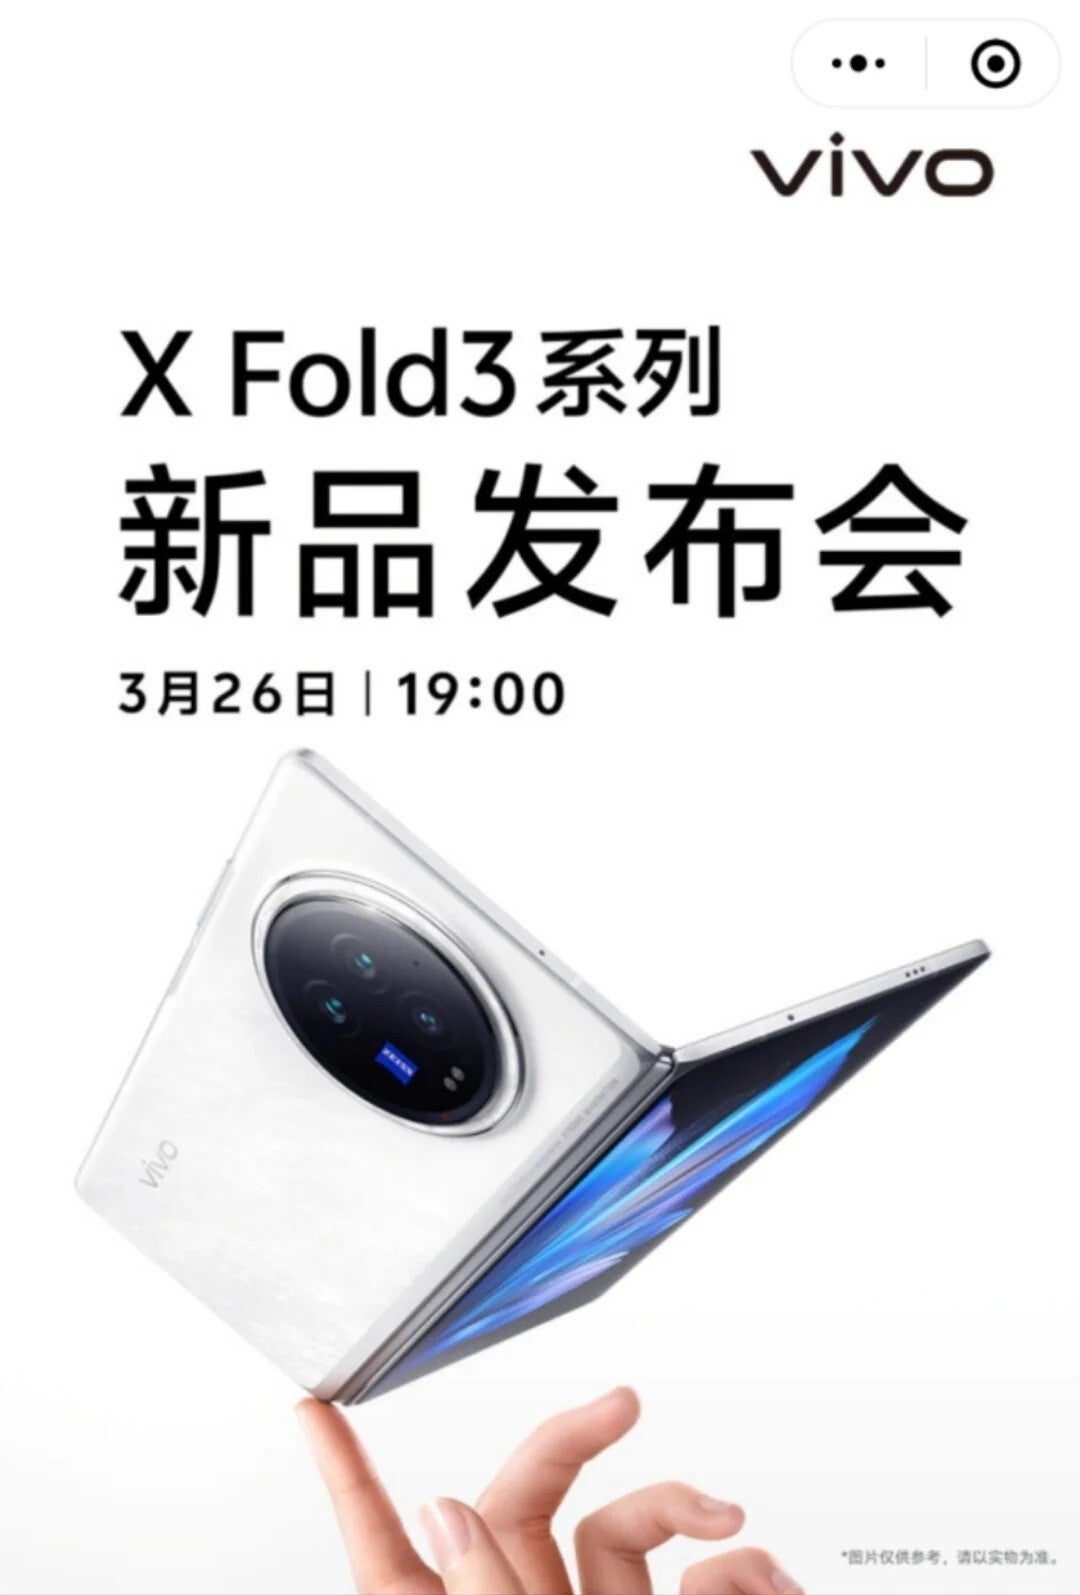 Die Vivo X Fold 3-Serie dürfte in etwas mehr als einer Woche auf den Markt kommen: Schauen Sie sich das genaue Datum an